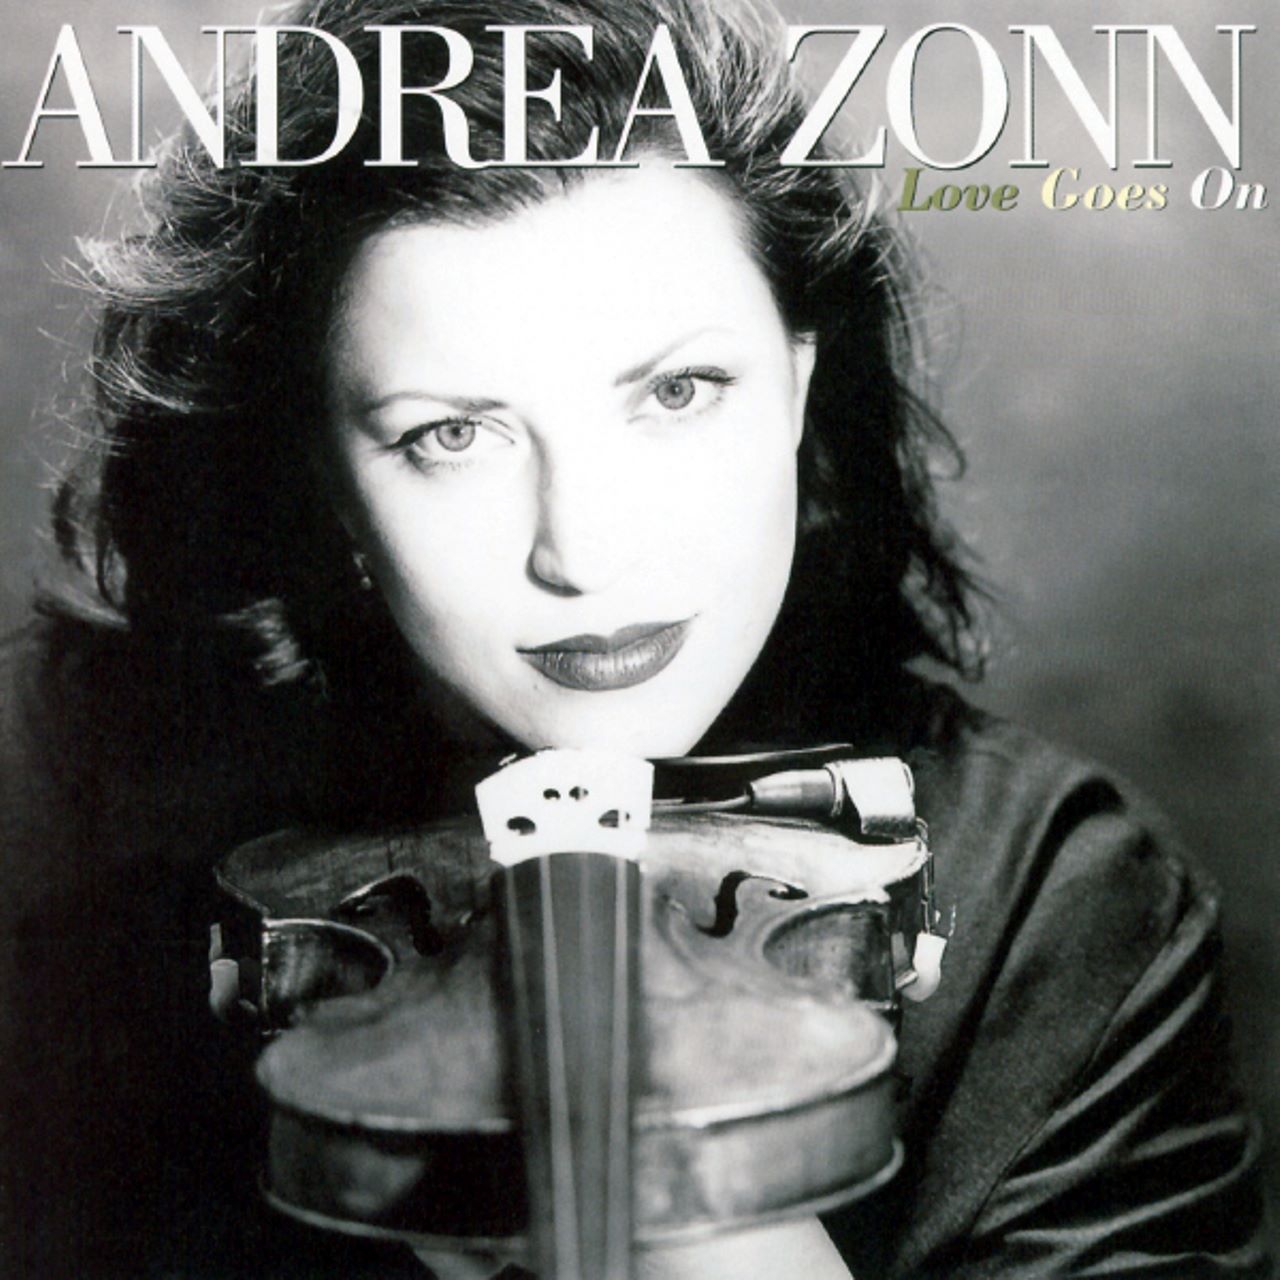 Andrea Zonn - Love Goes On cover album